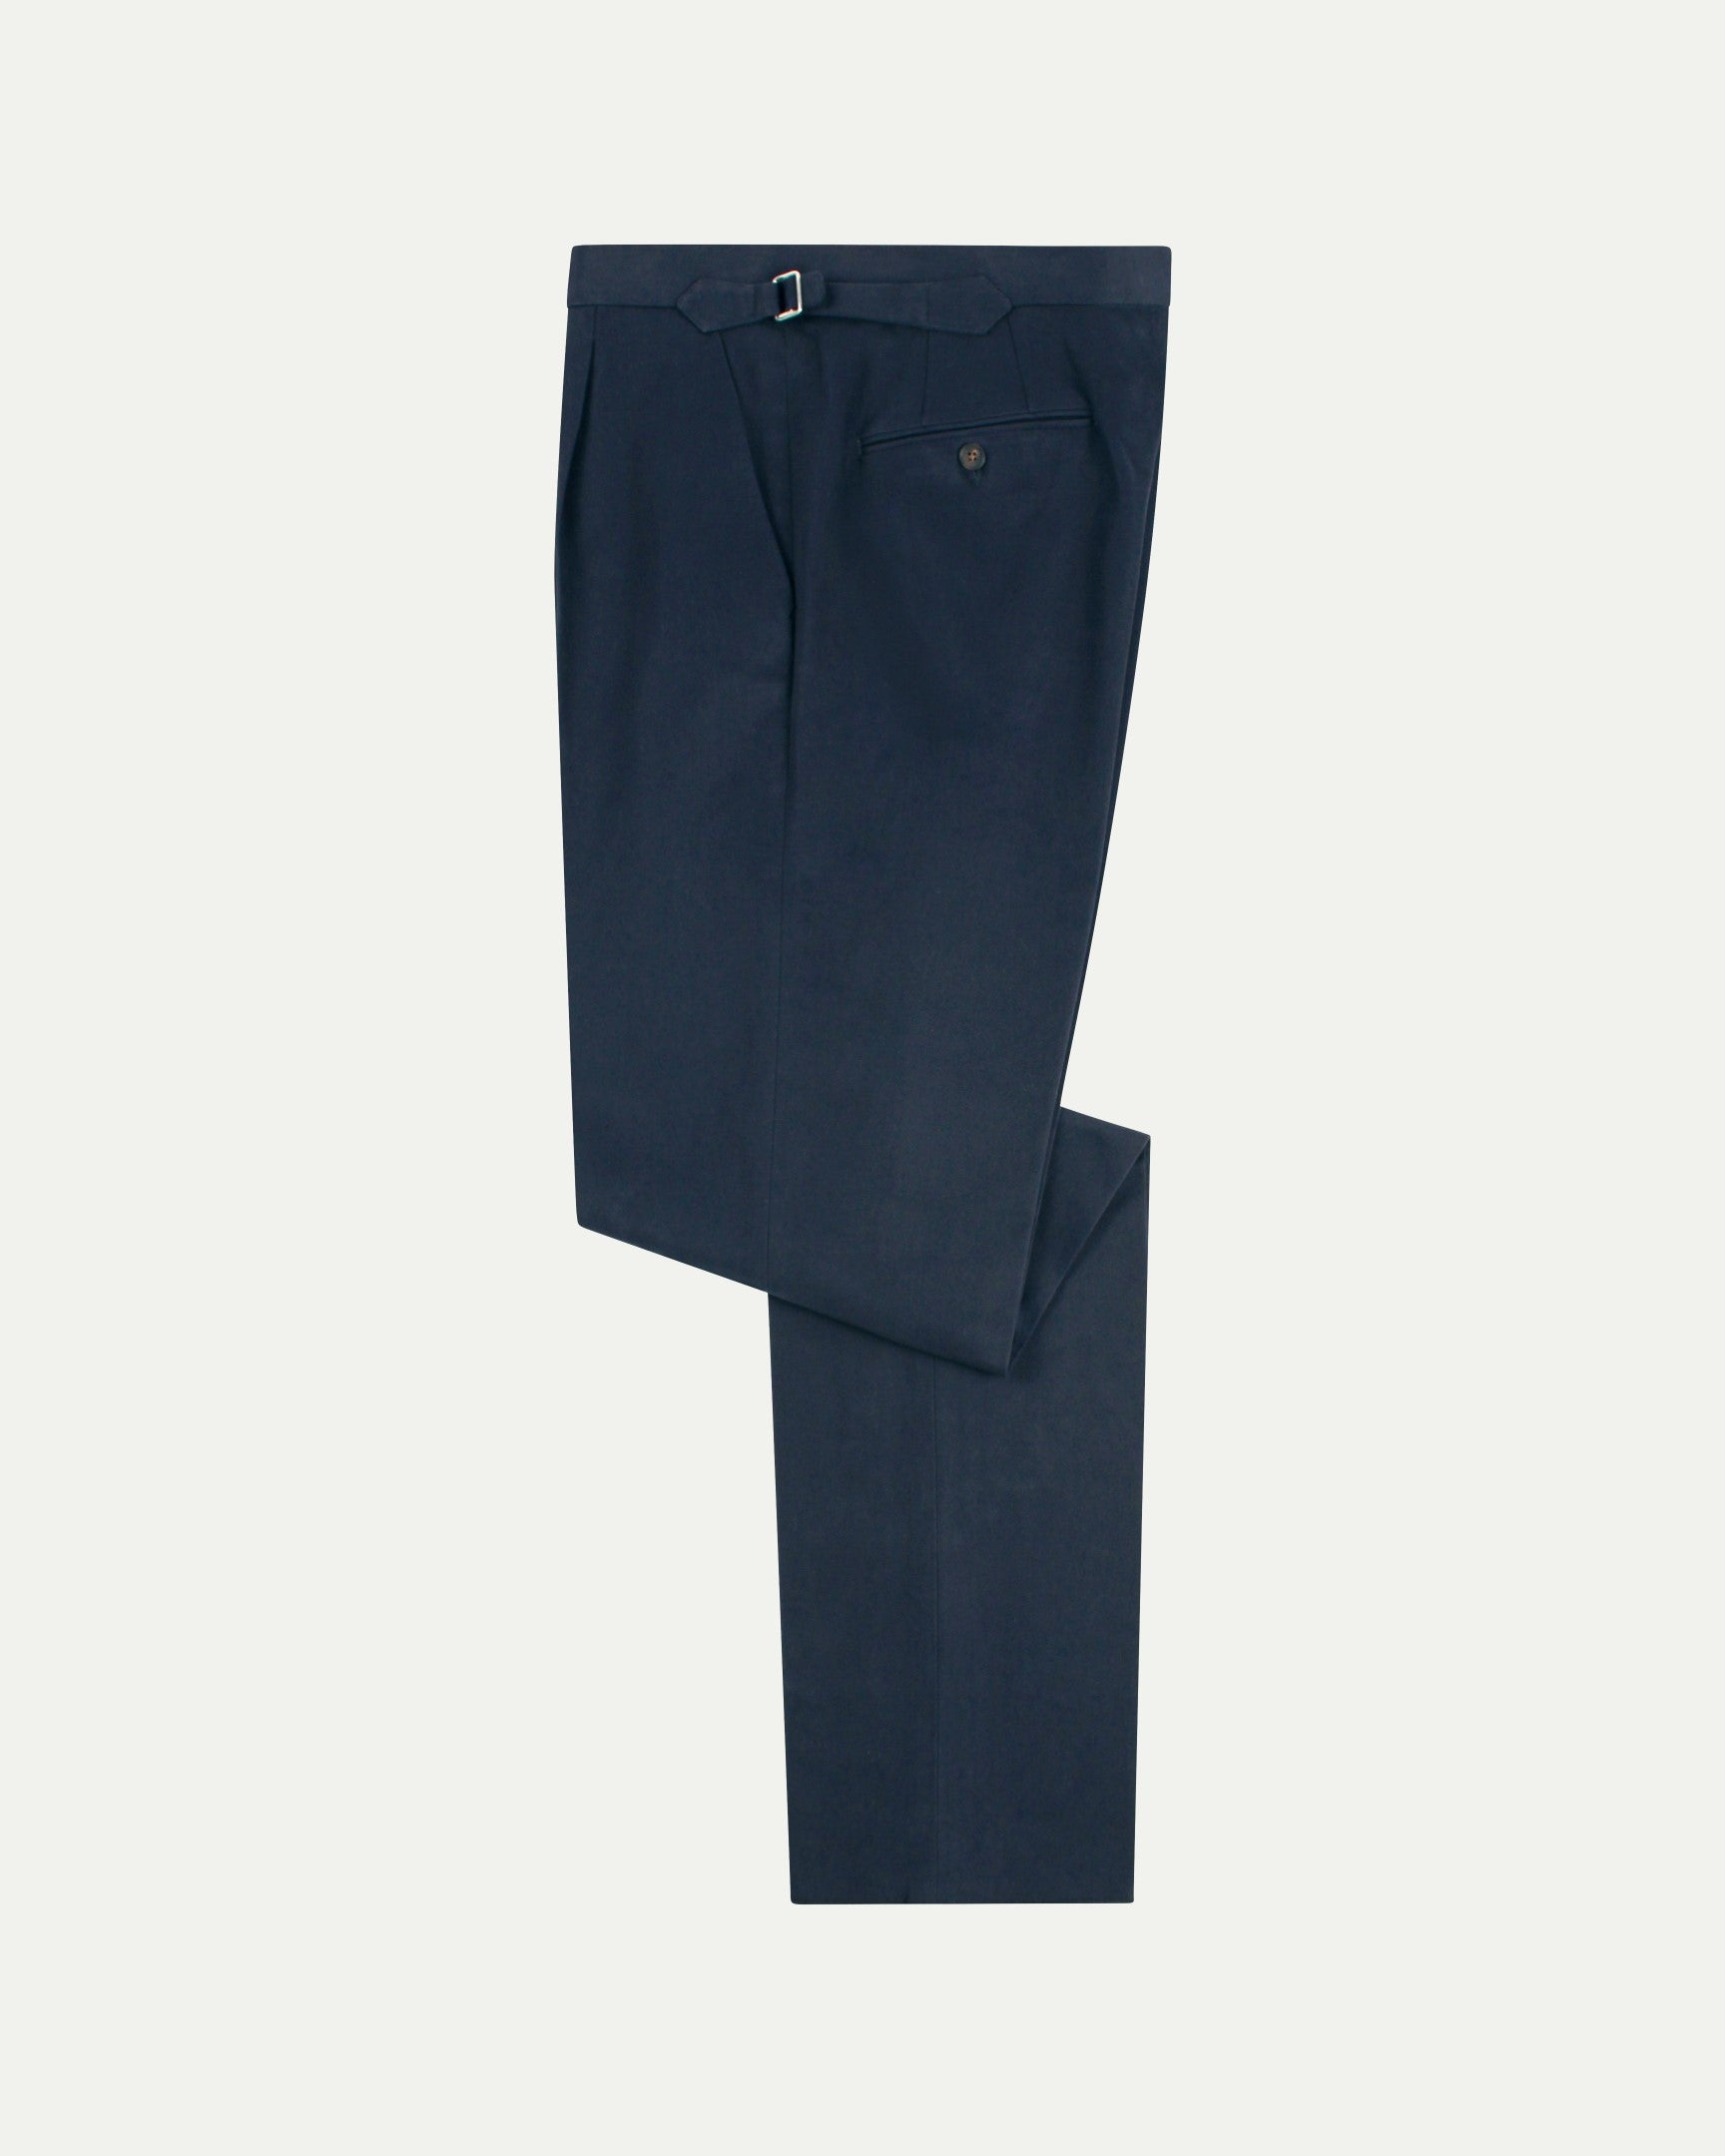 Navy Blue Cotton Men's Formal Pant